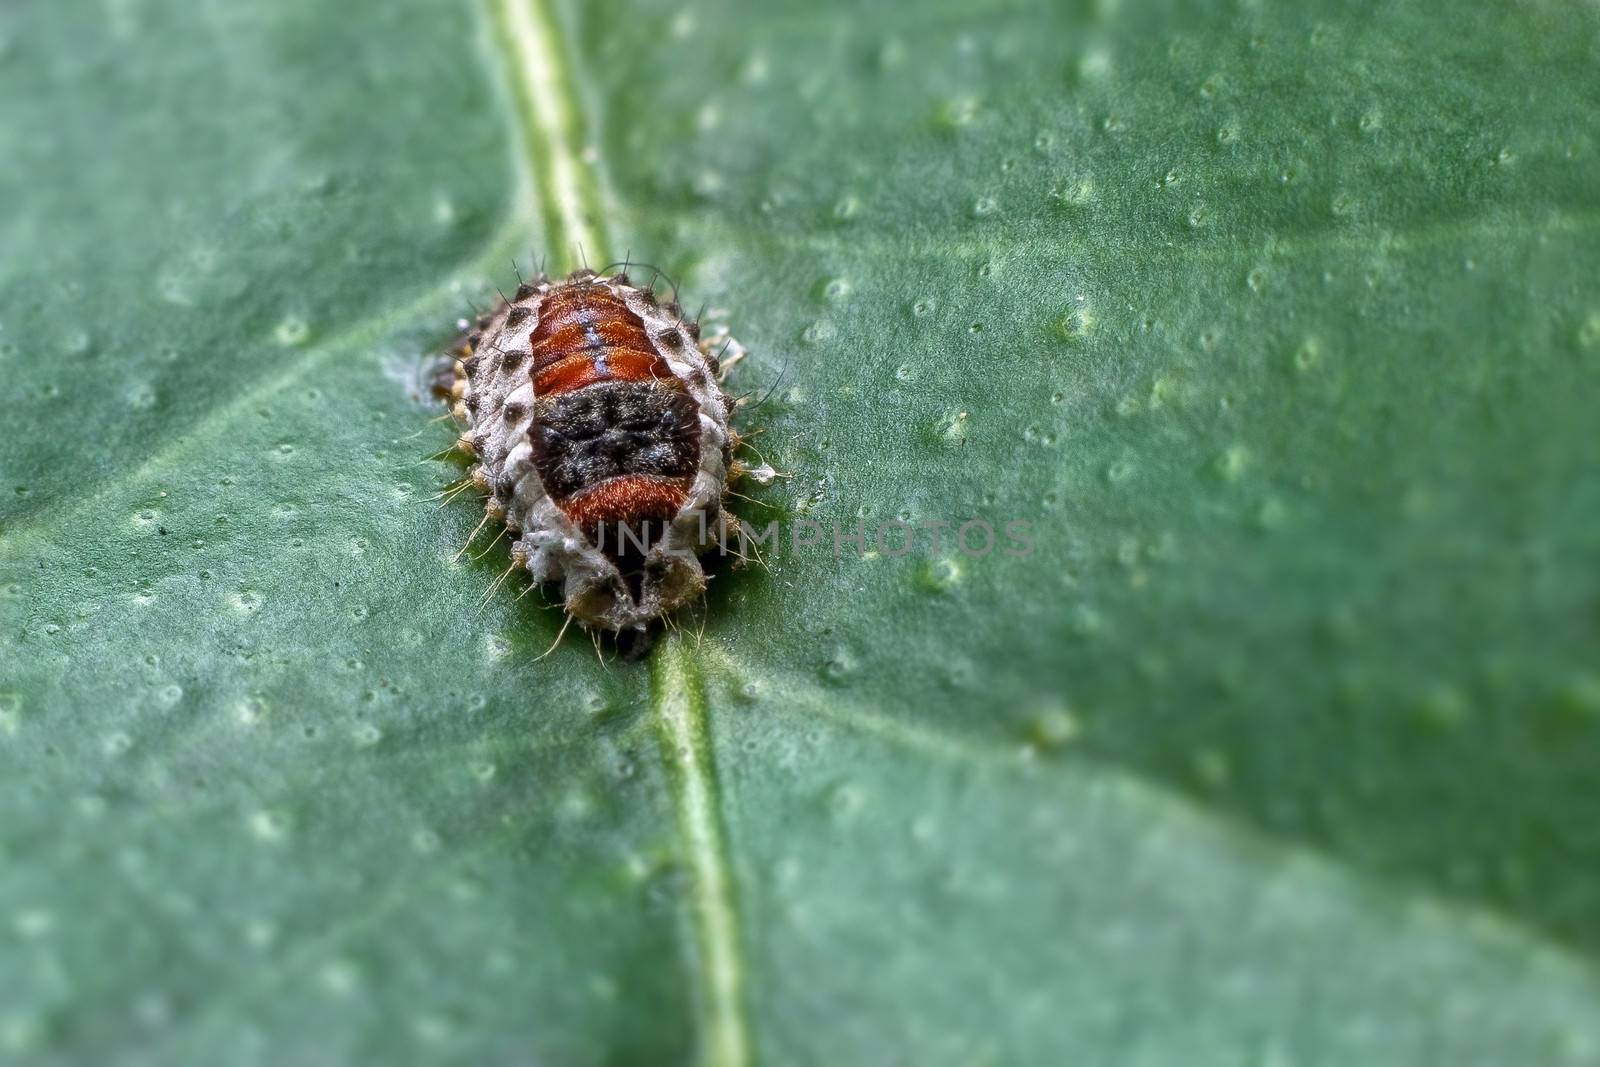 Bug in the leaf by dynamicfoto